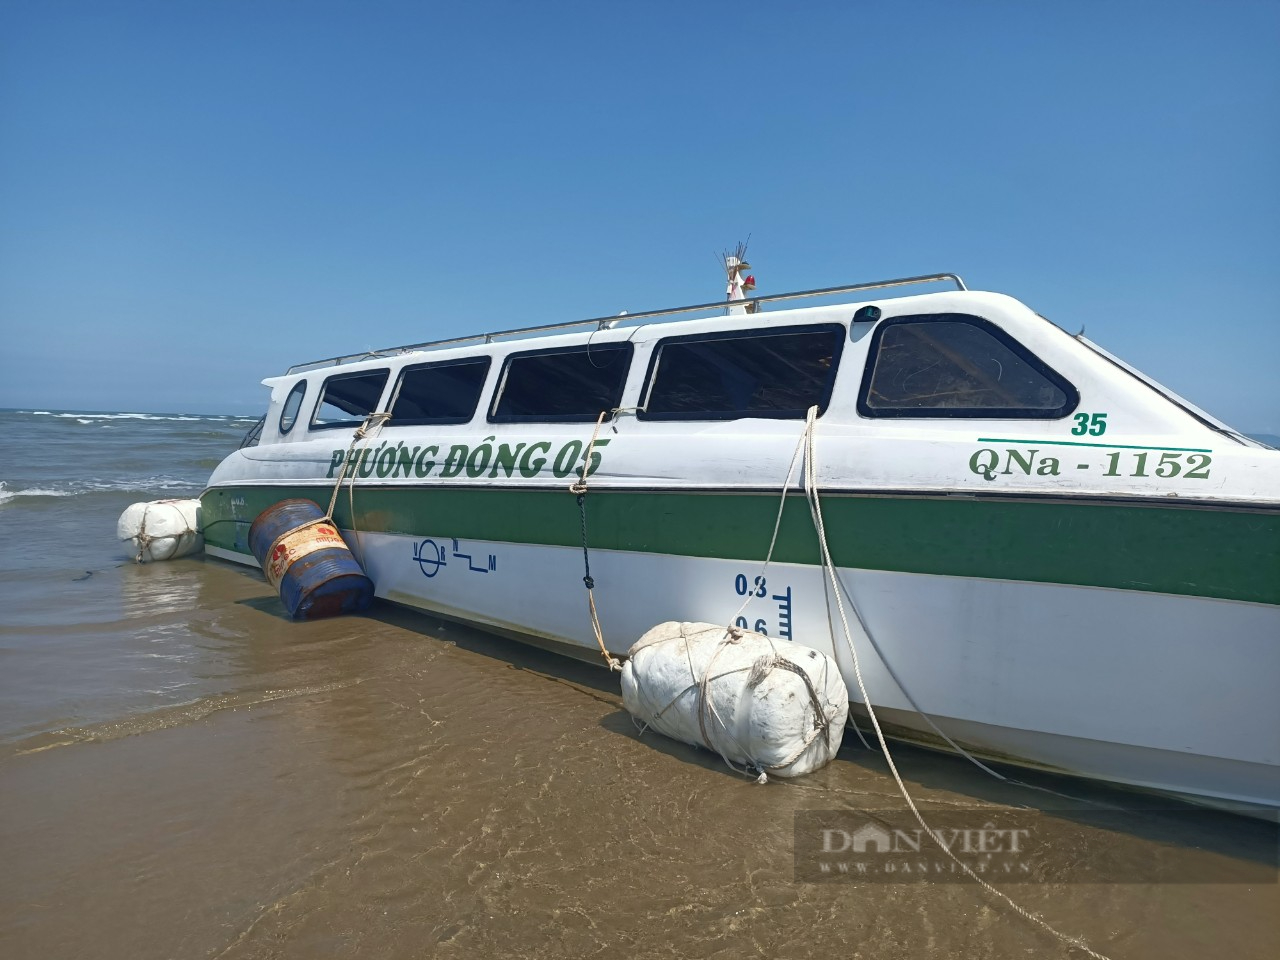 Quảng Nam: Cận cảnh tan nát của ca nô chìm làm 17 người chết và ...